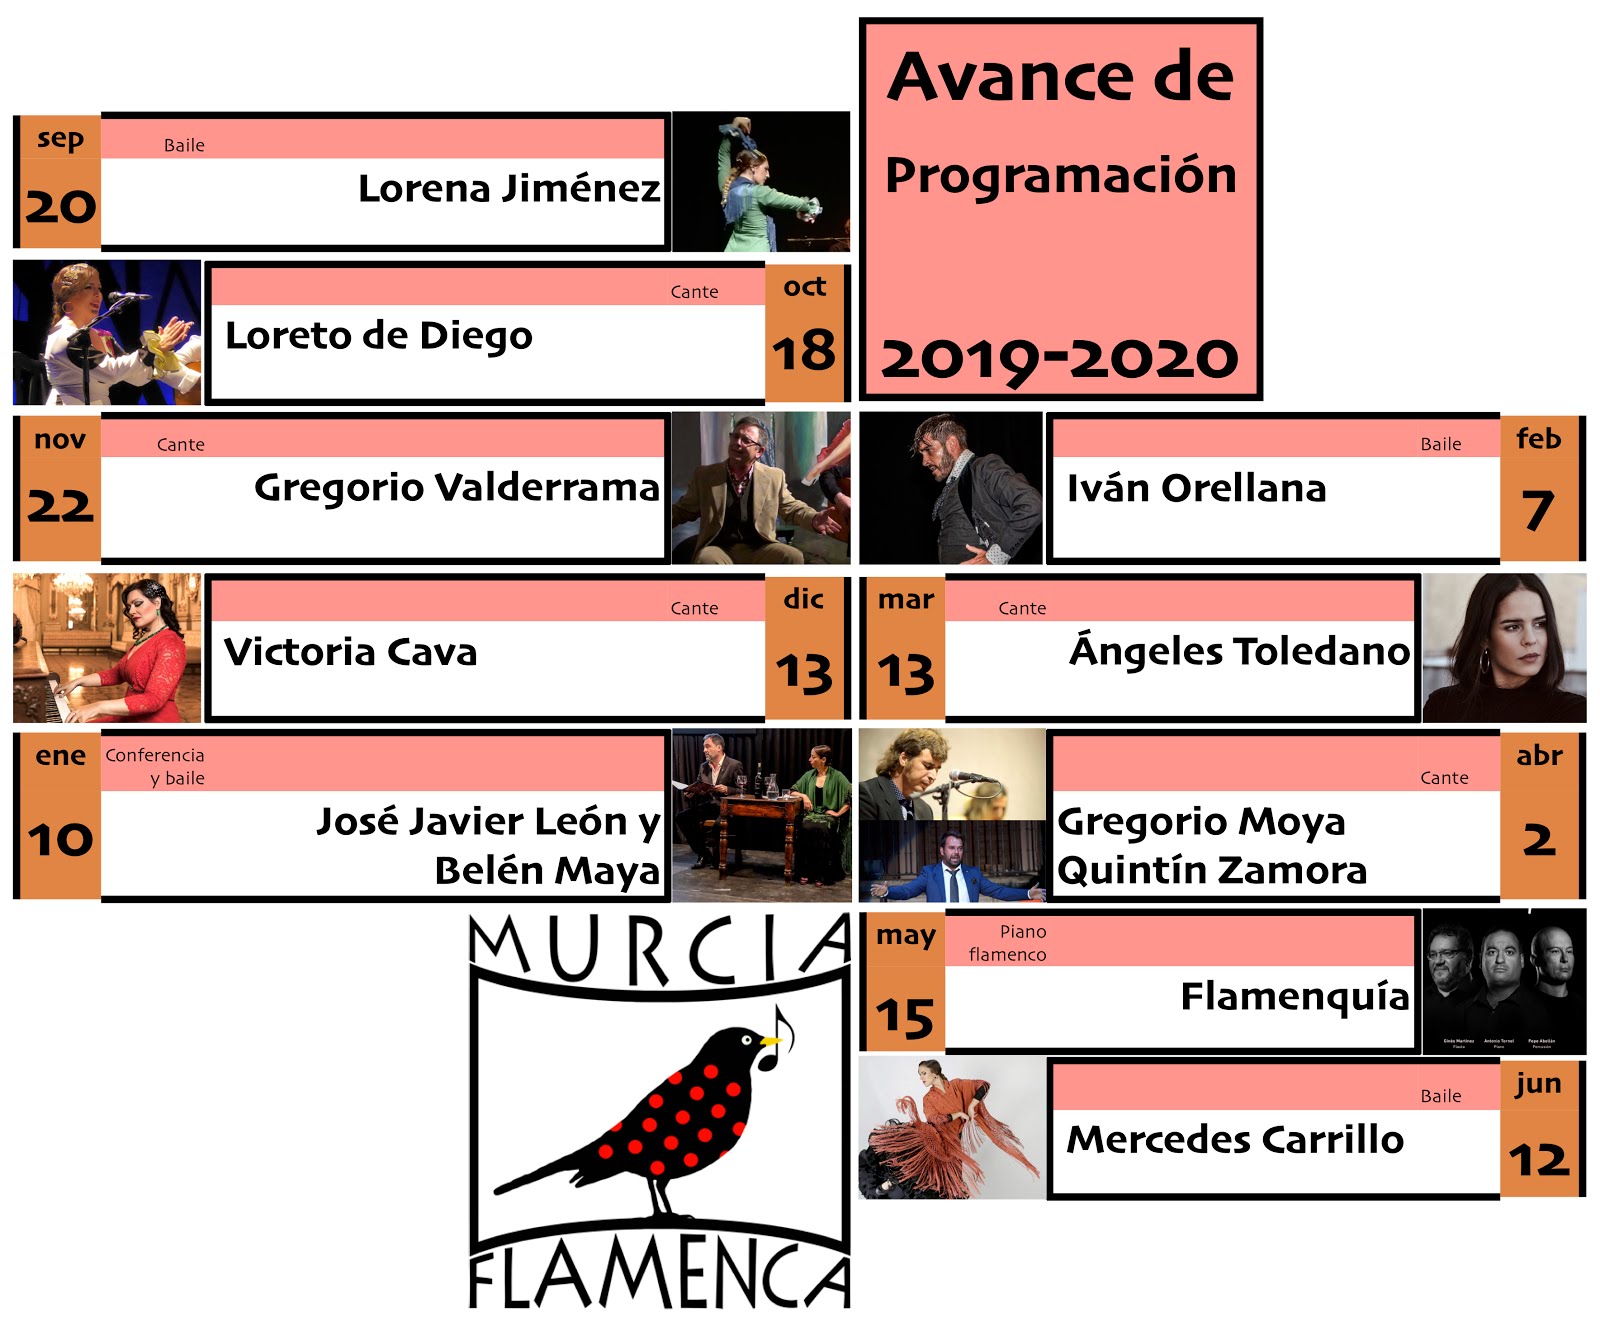 Murcia Flamenca